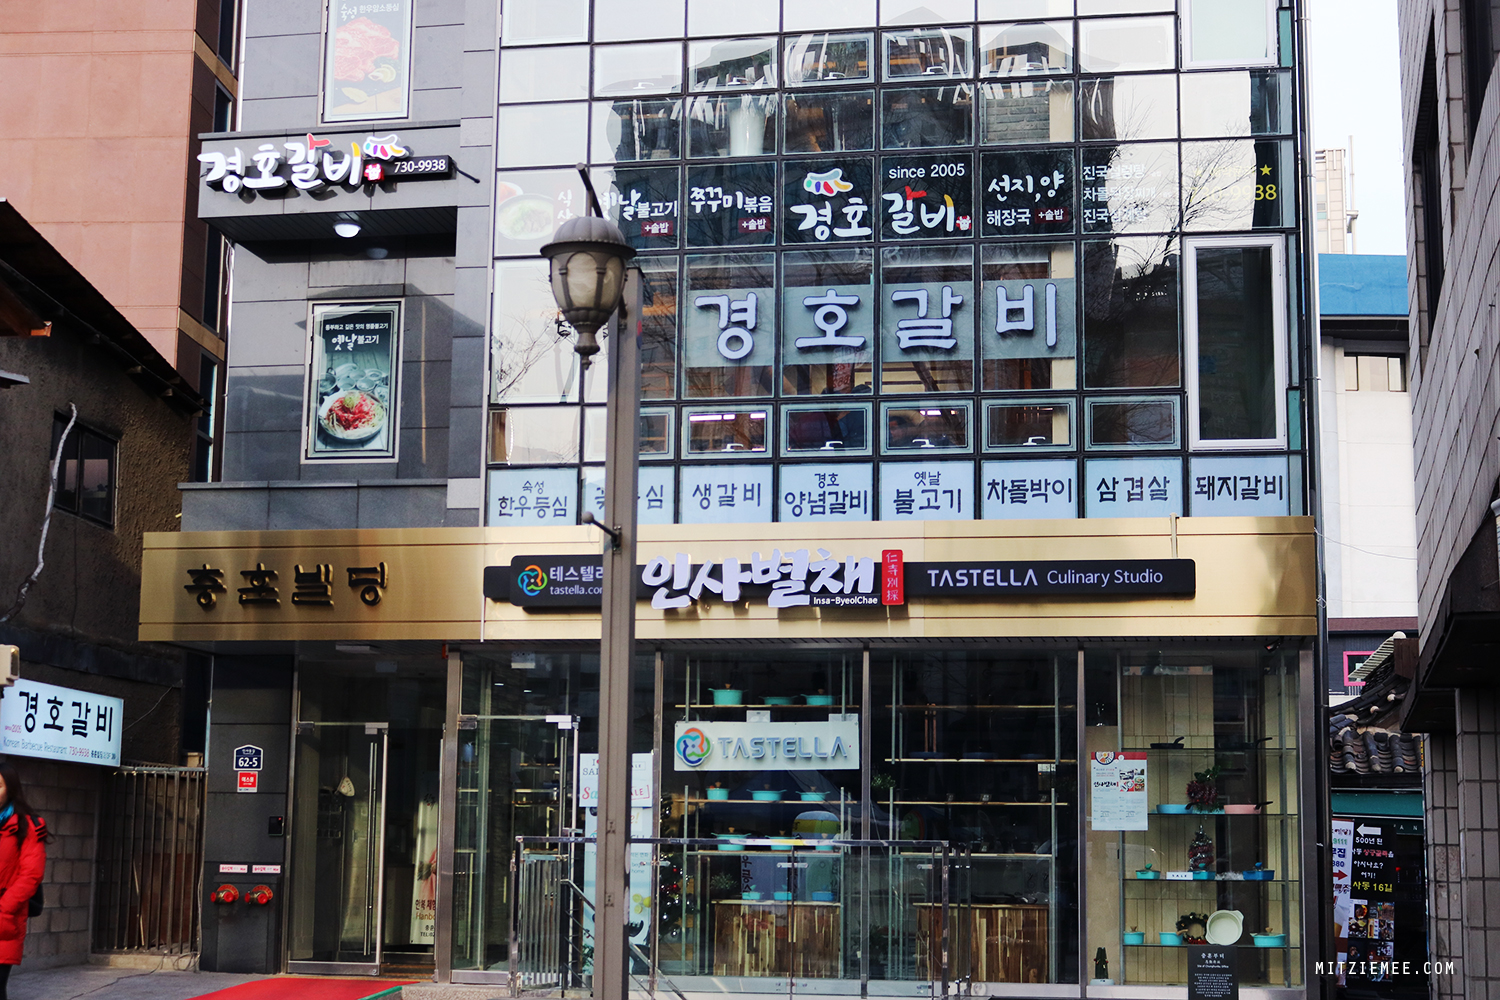 Gyeongbokgung in Seoul